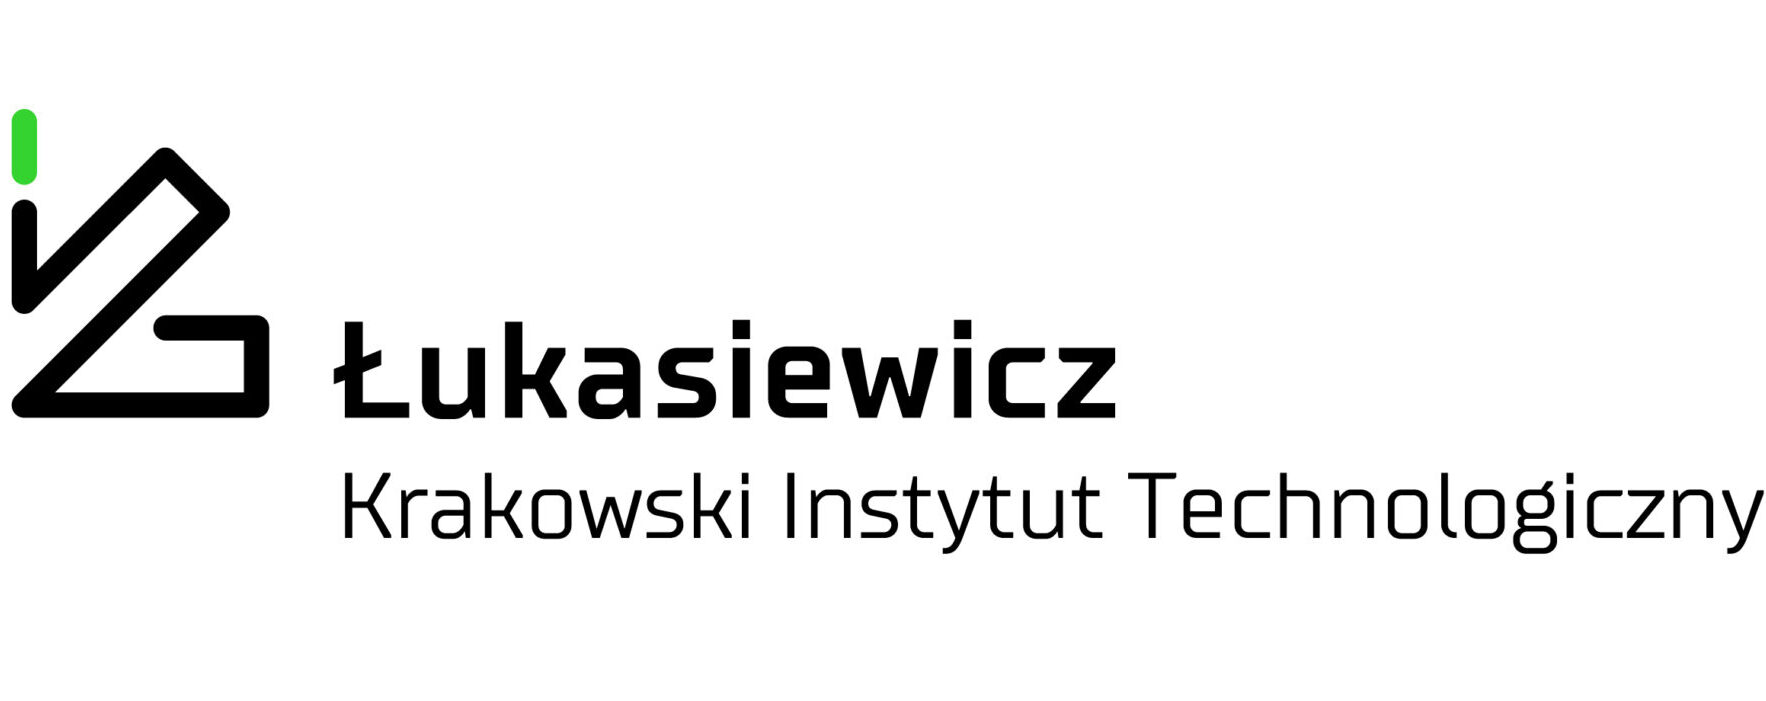 Łukasiewicz – Krakowski Instytut Technologiczny